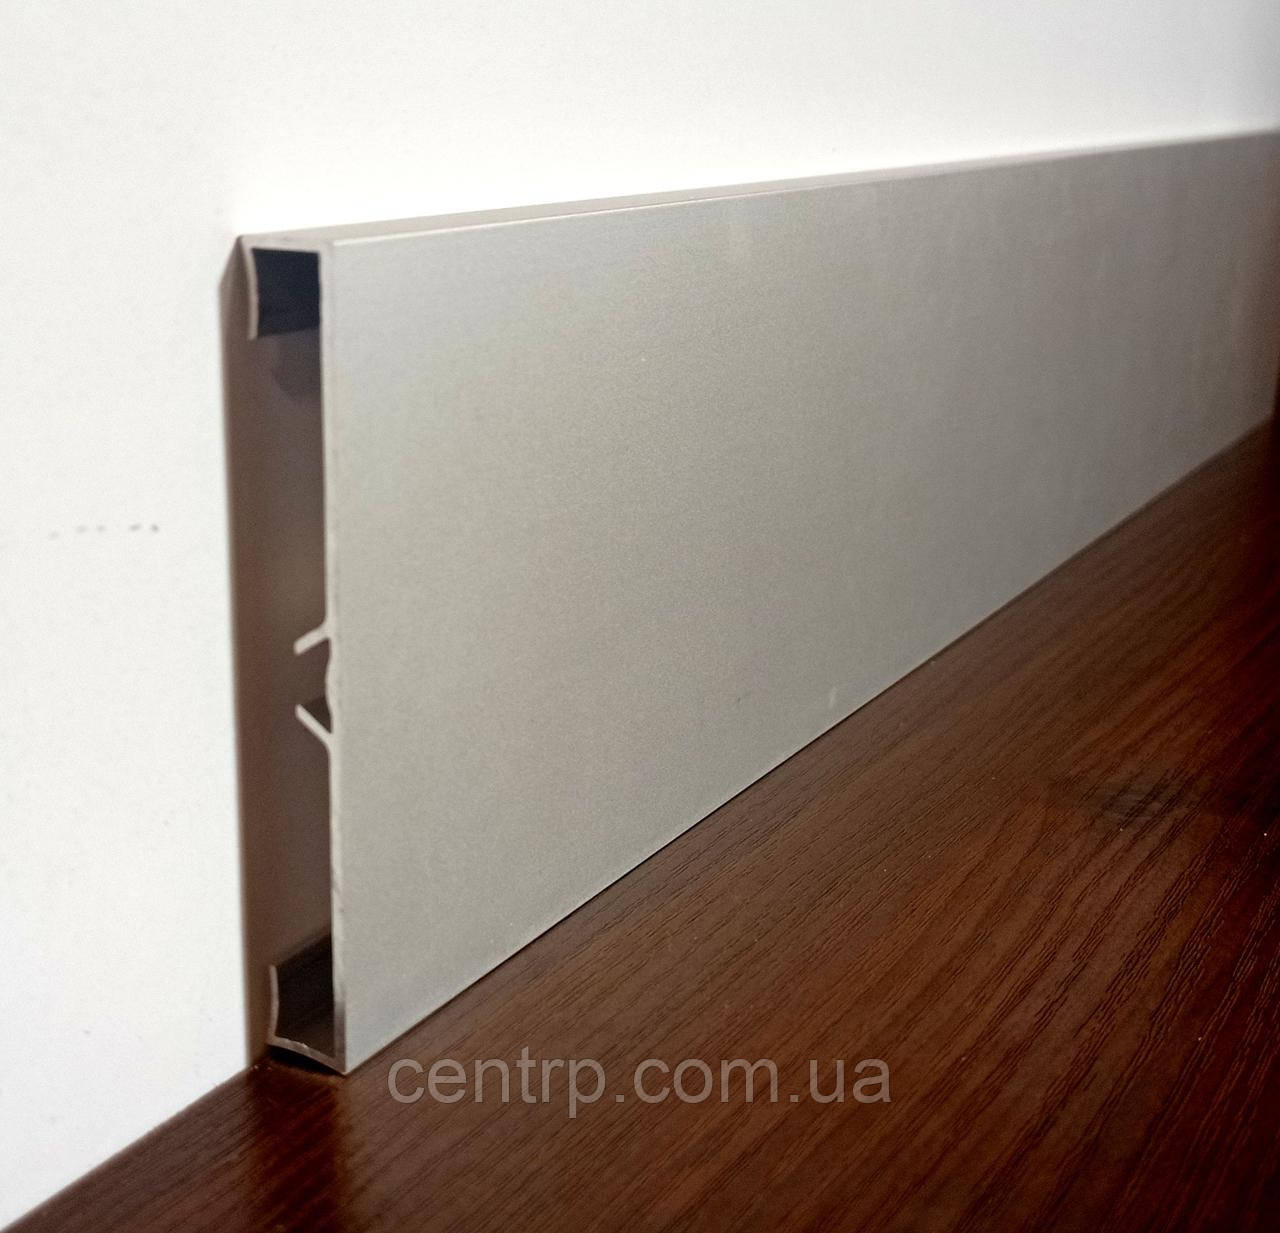 

Дизайнерский алюминиевый плинтус BEST DEAL 1/80 накладной, высота 80 мм, длина 2,5м, Серебристый